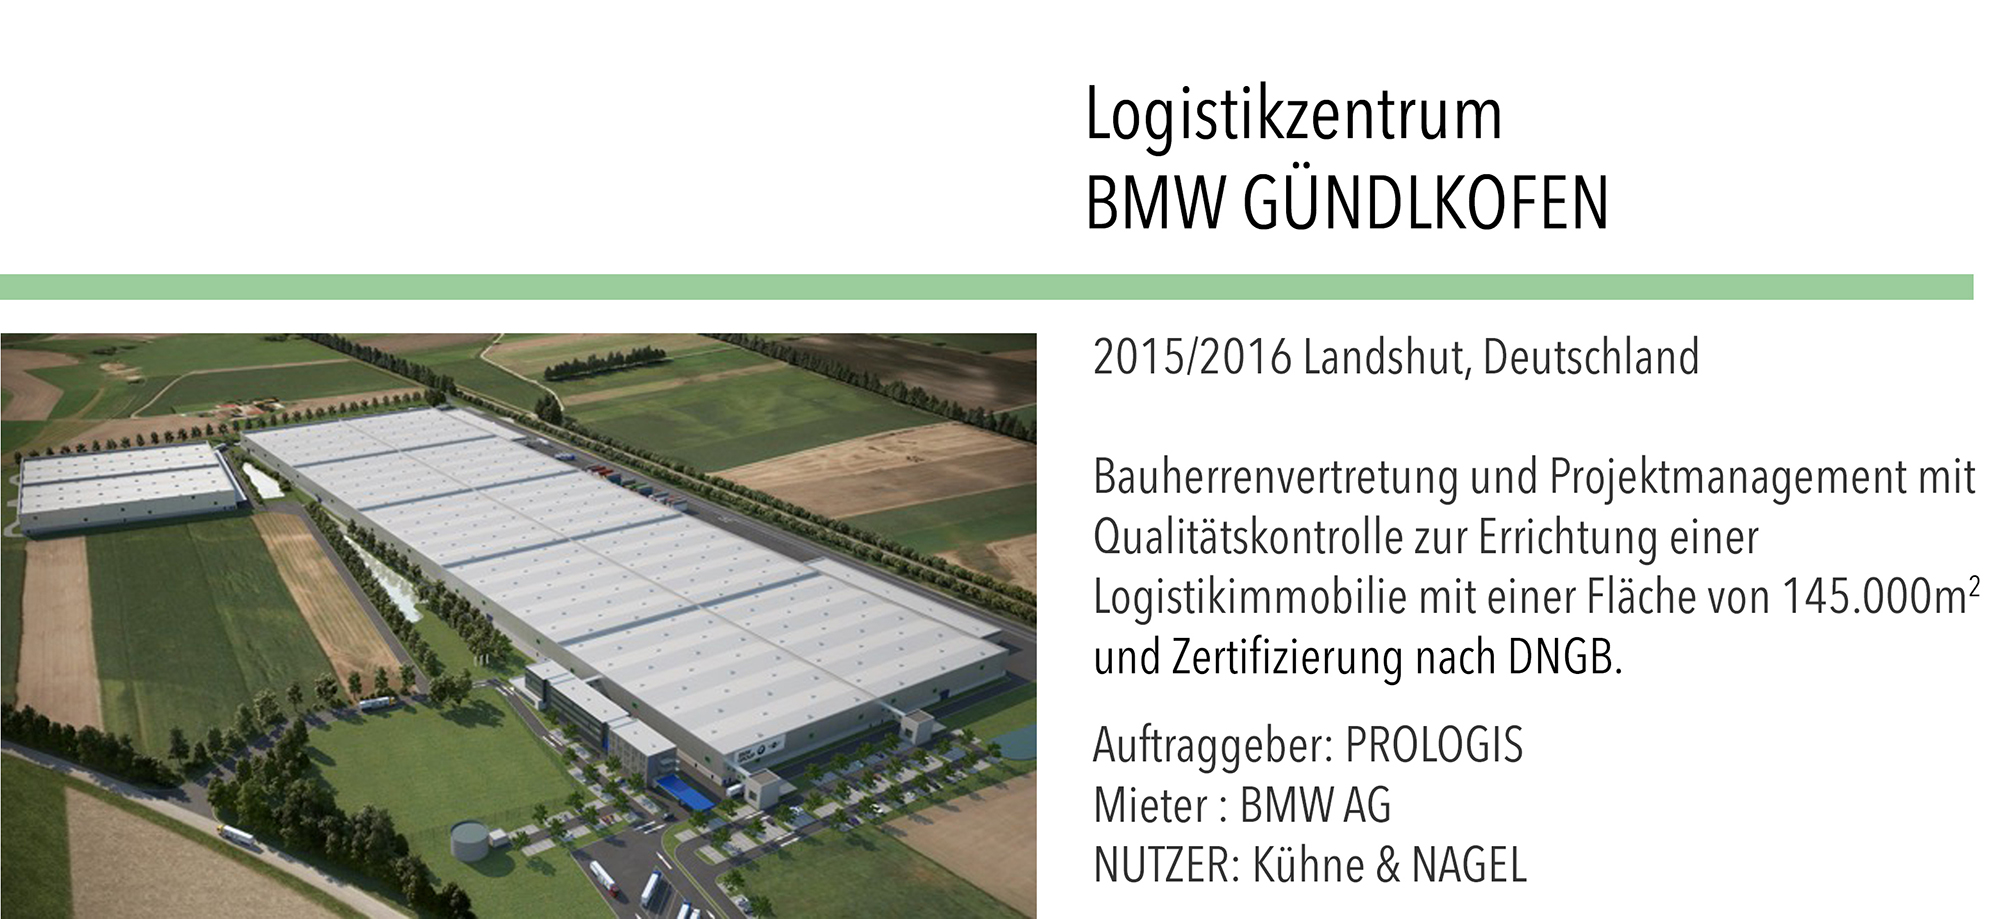 Logistikhalle BMW Gündlkofen Prologis